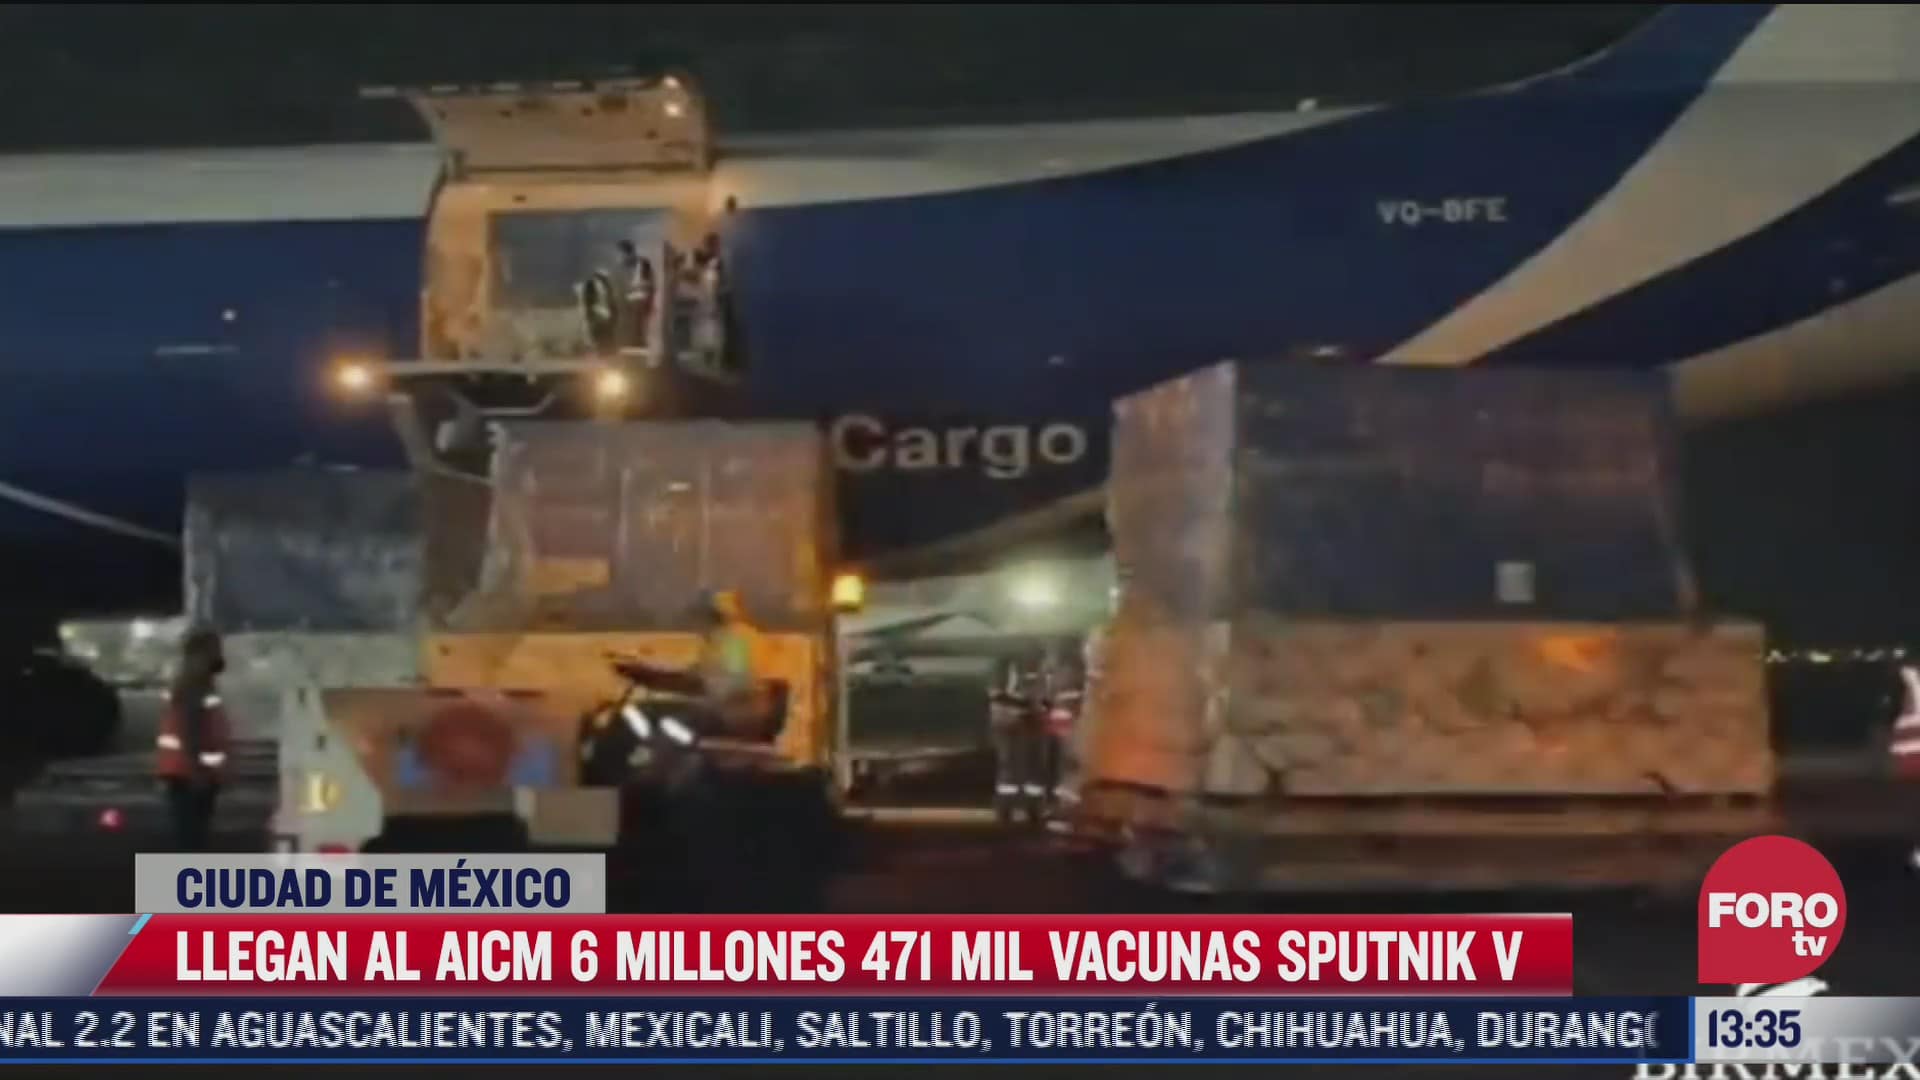 llega cargamento de vacunas sputnik v a mexico